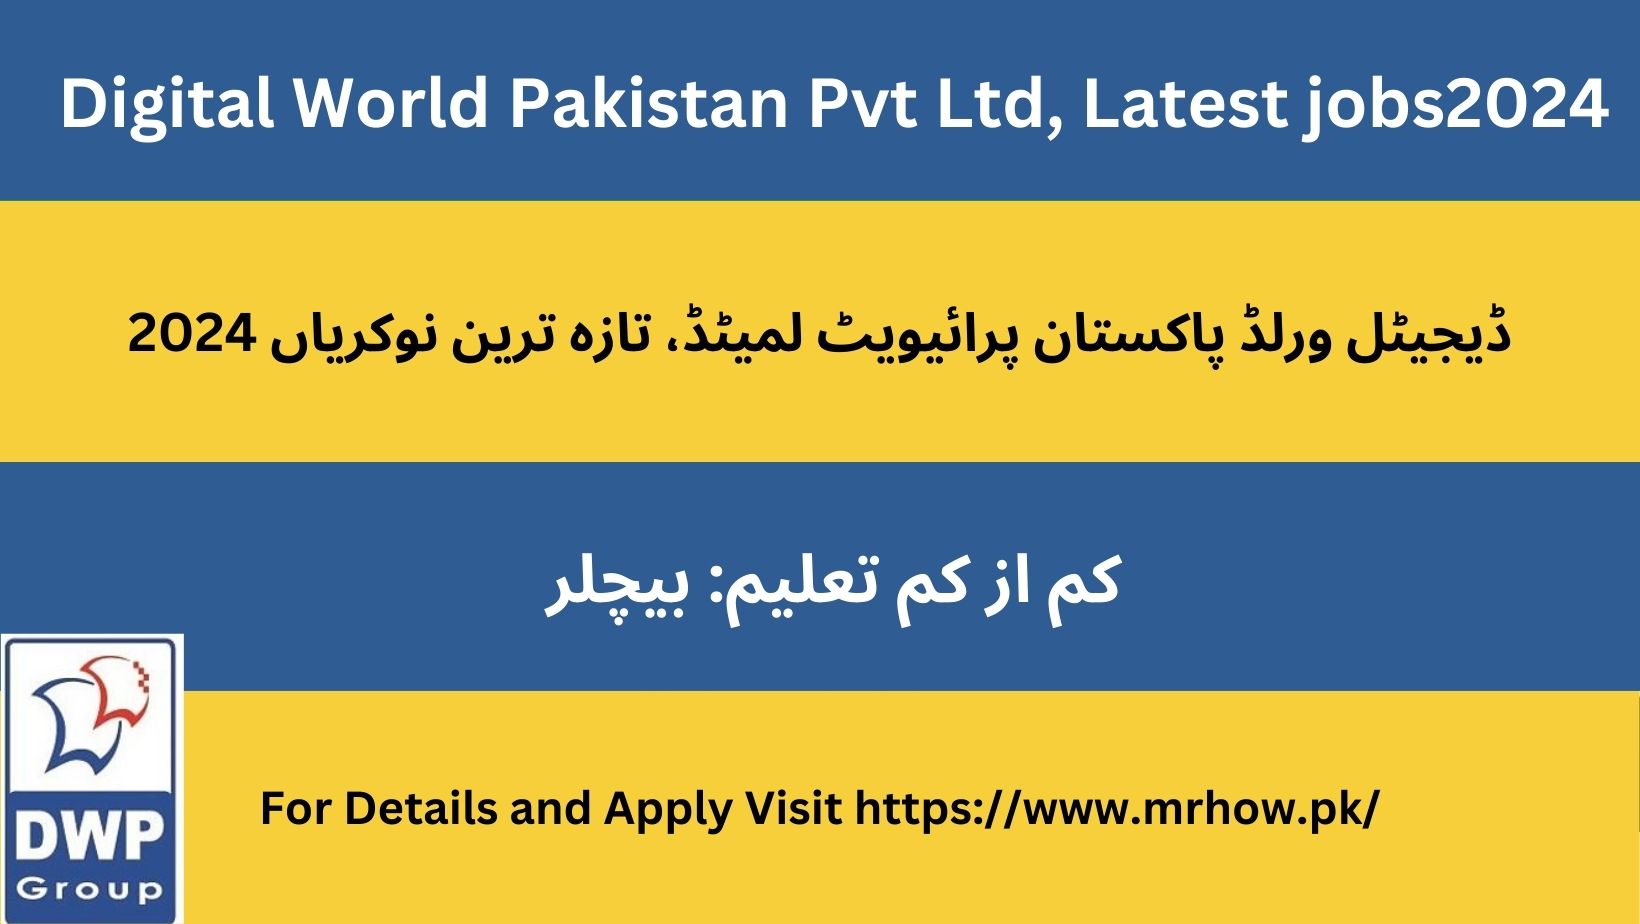 Digital World Pakistan Pvt Ltd